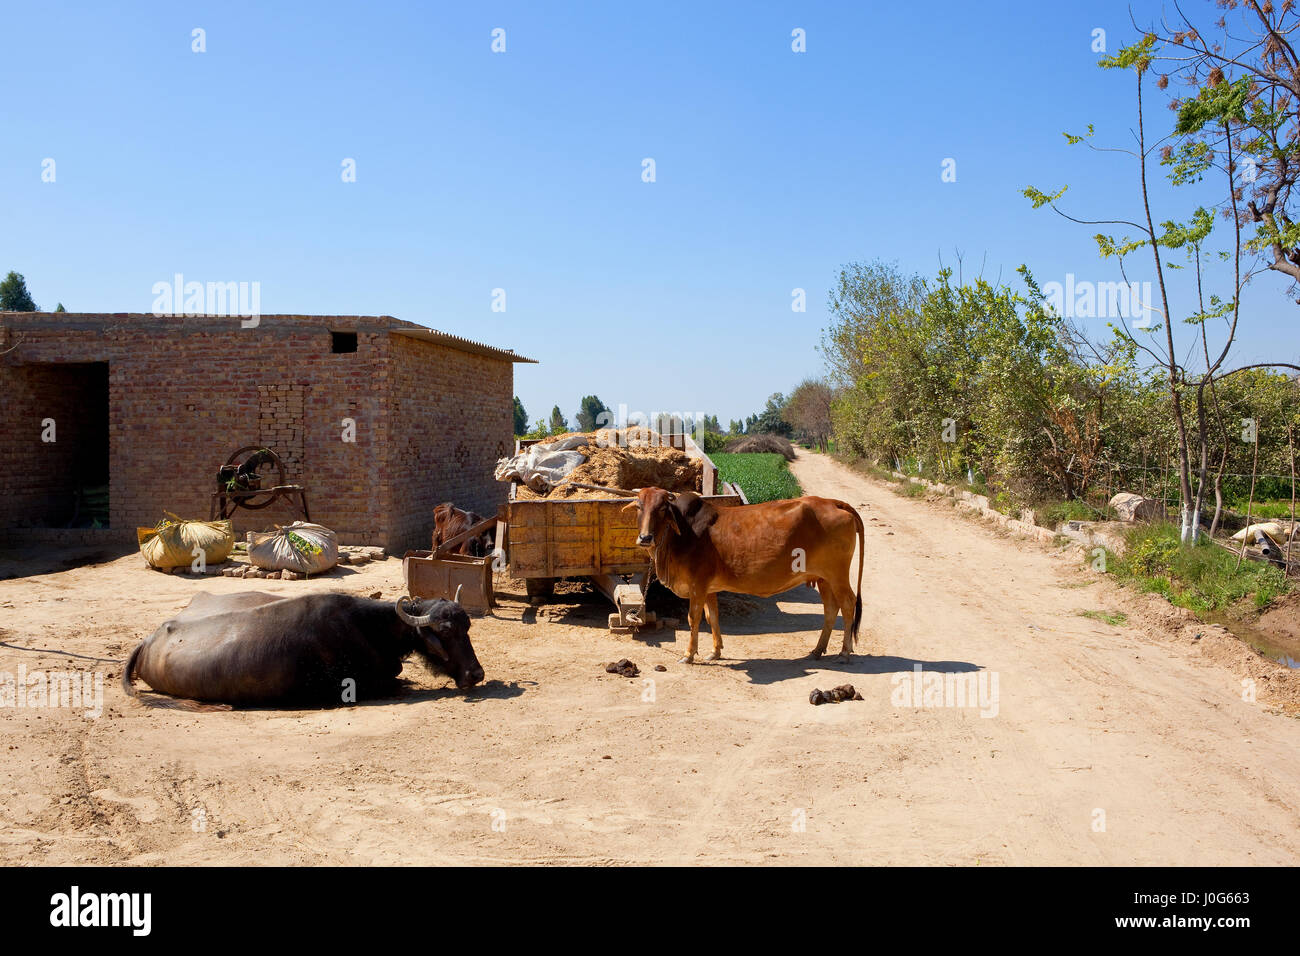 eine traditionelle Rajasthan-Hof mit Vieh und Wagen in der Nähe von landwirtschaftlichen Gebäuden und Weizenfelder unter blauem Himmel im Frühling in Indien Stockfoto